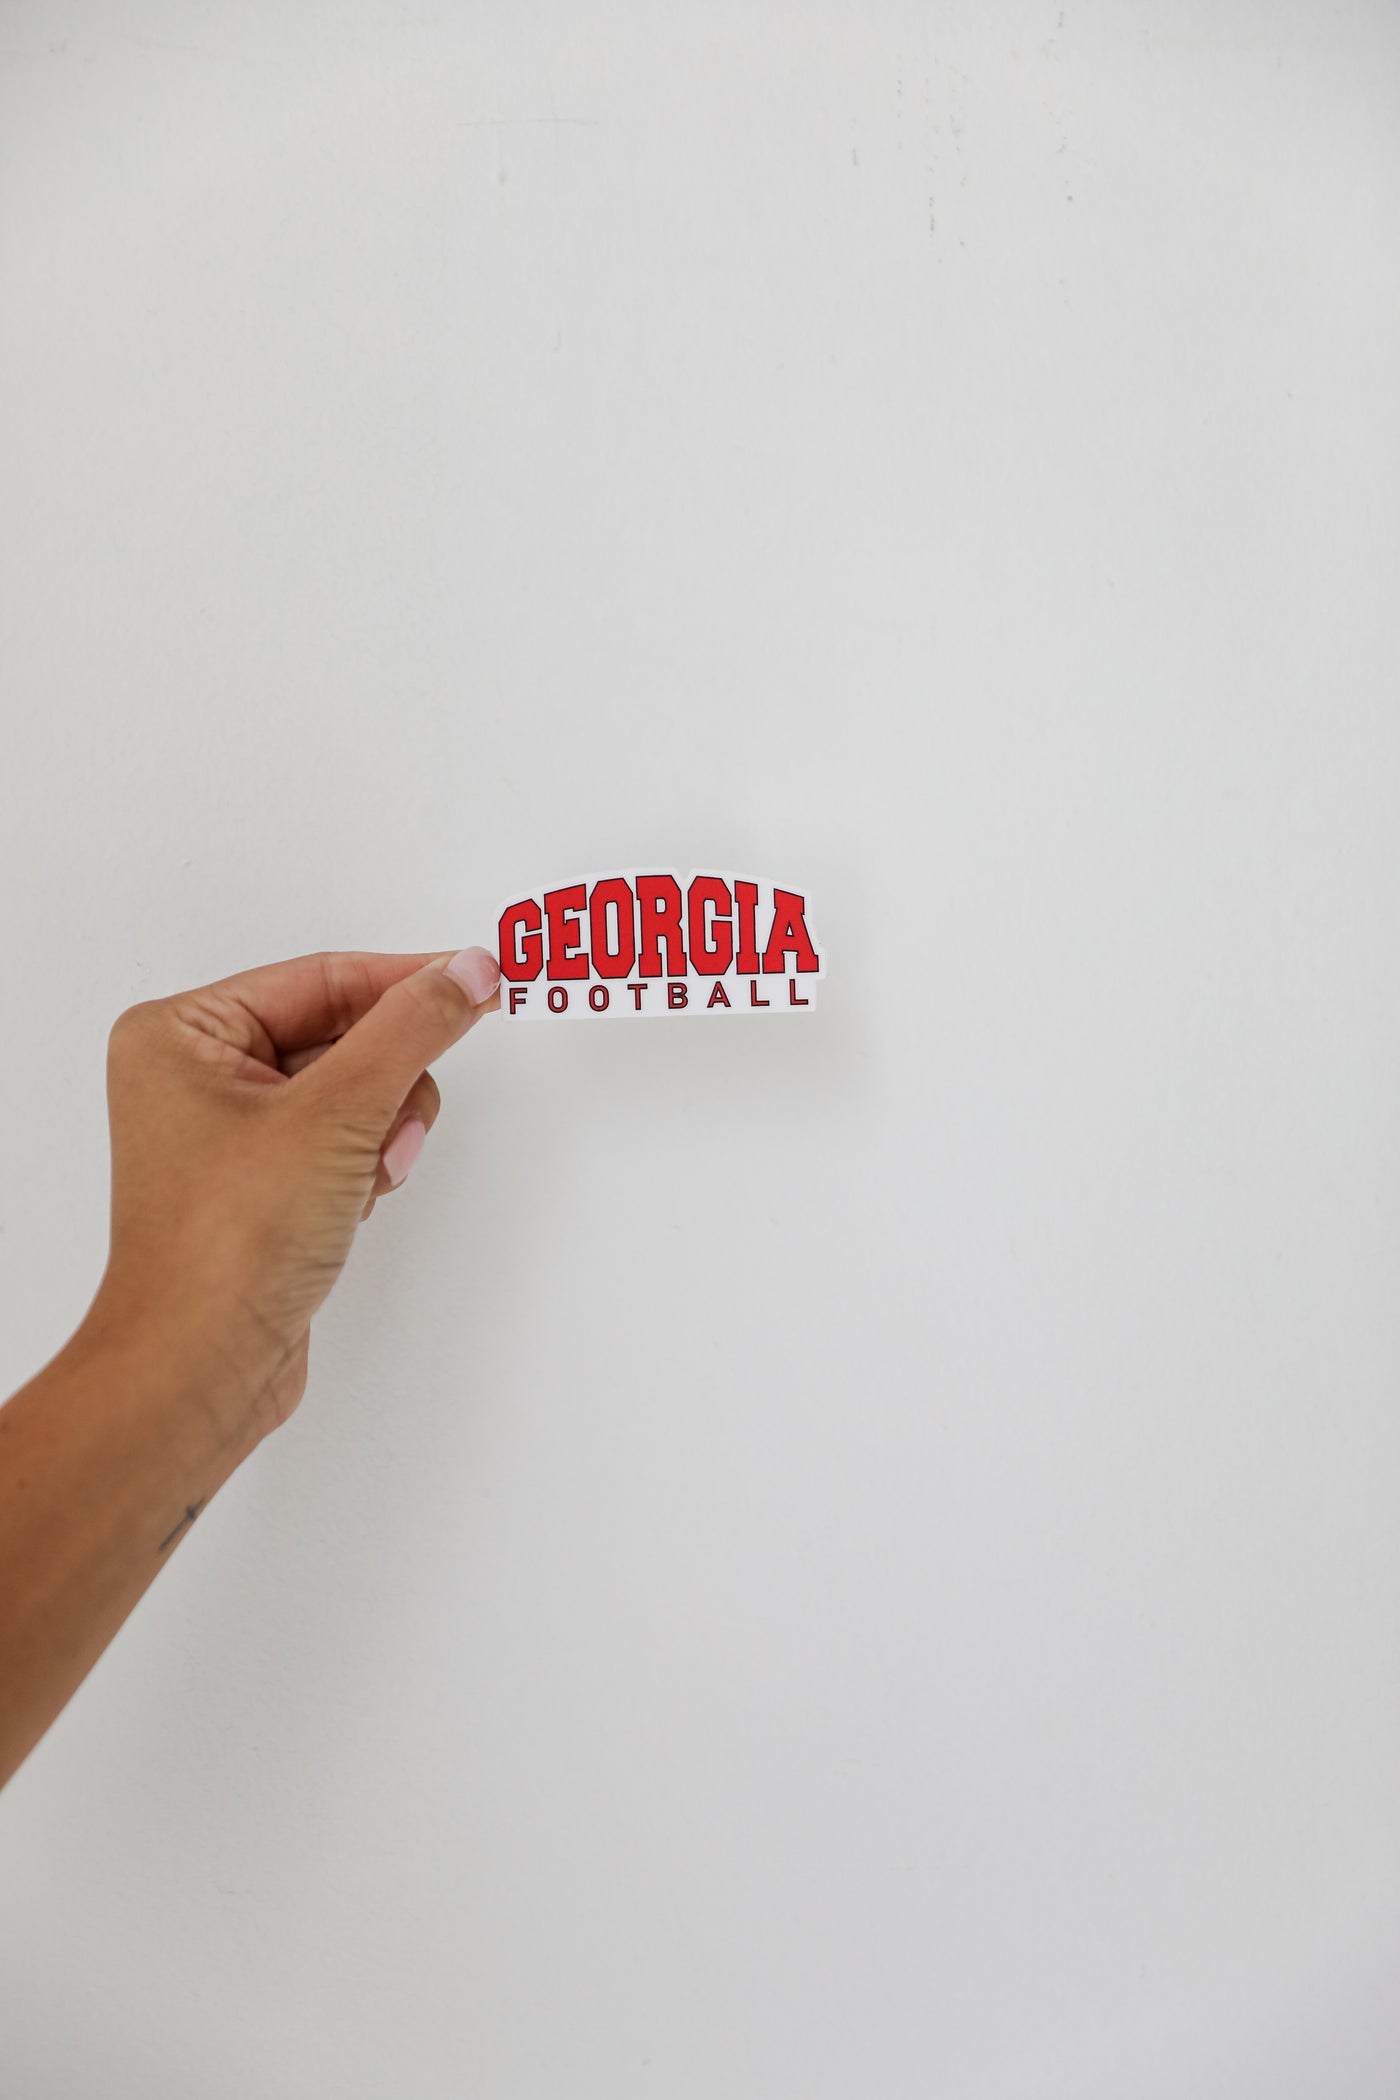 Georgia Football Sticker close up